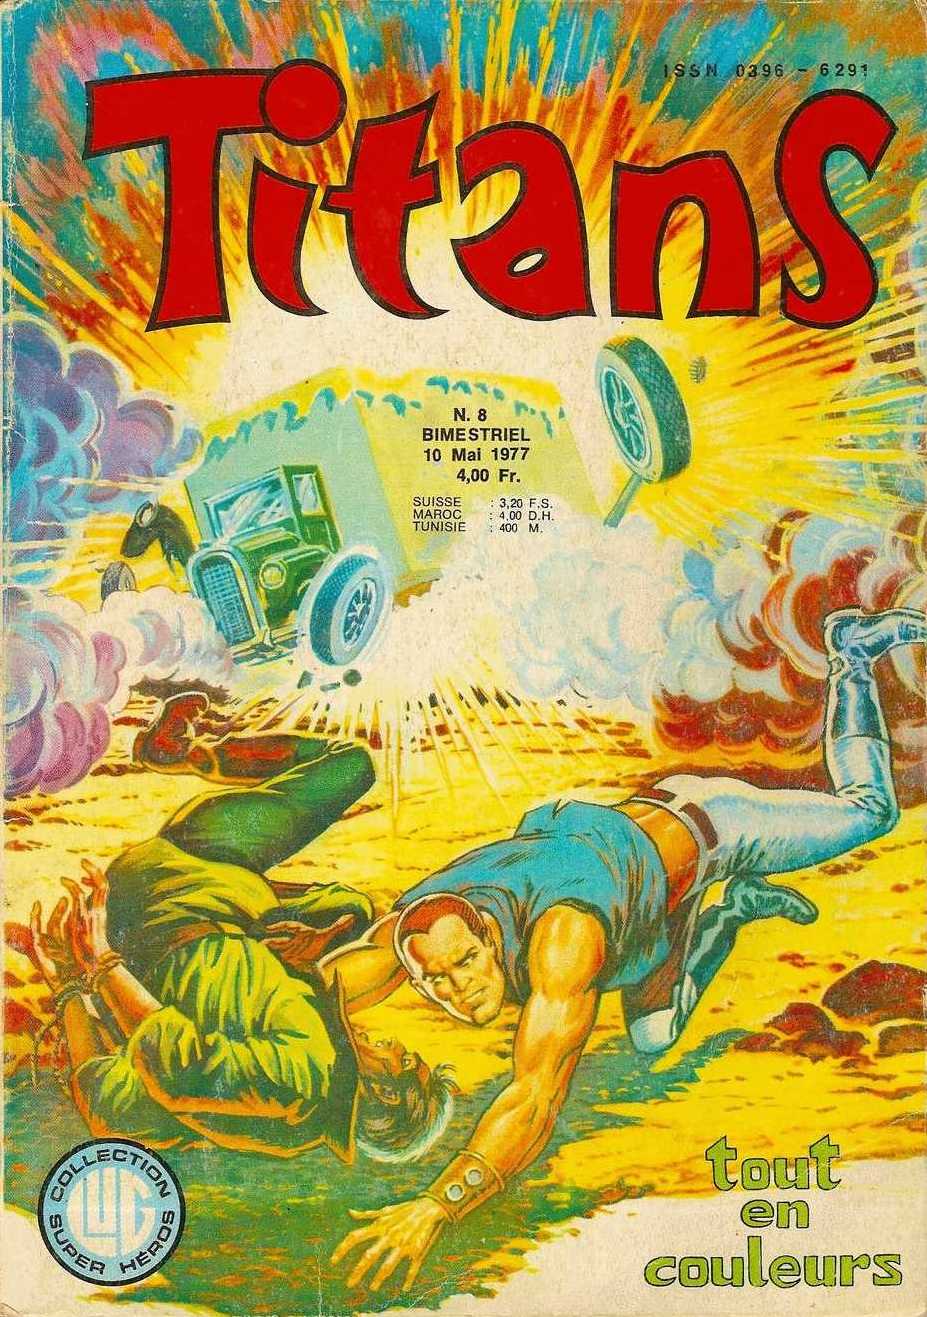 Scan de la Couverture Titans n 8